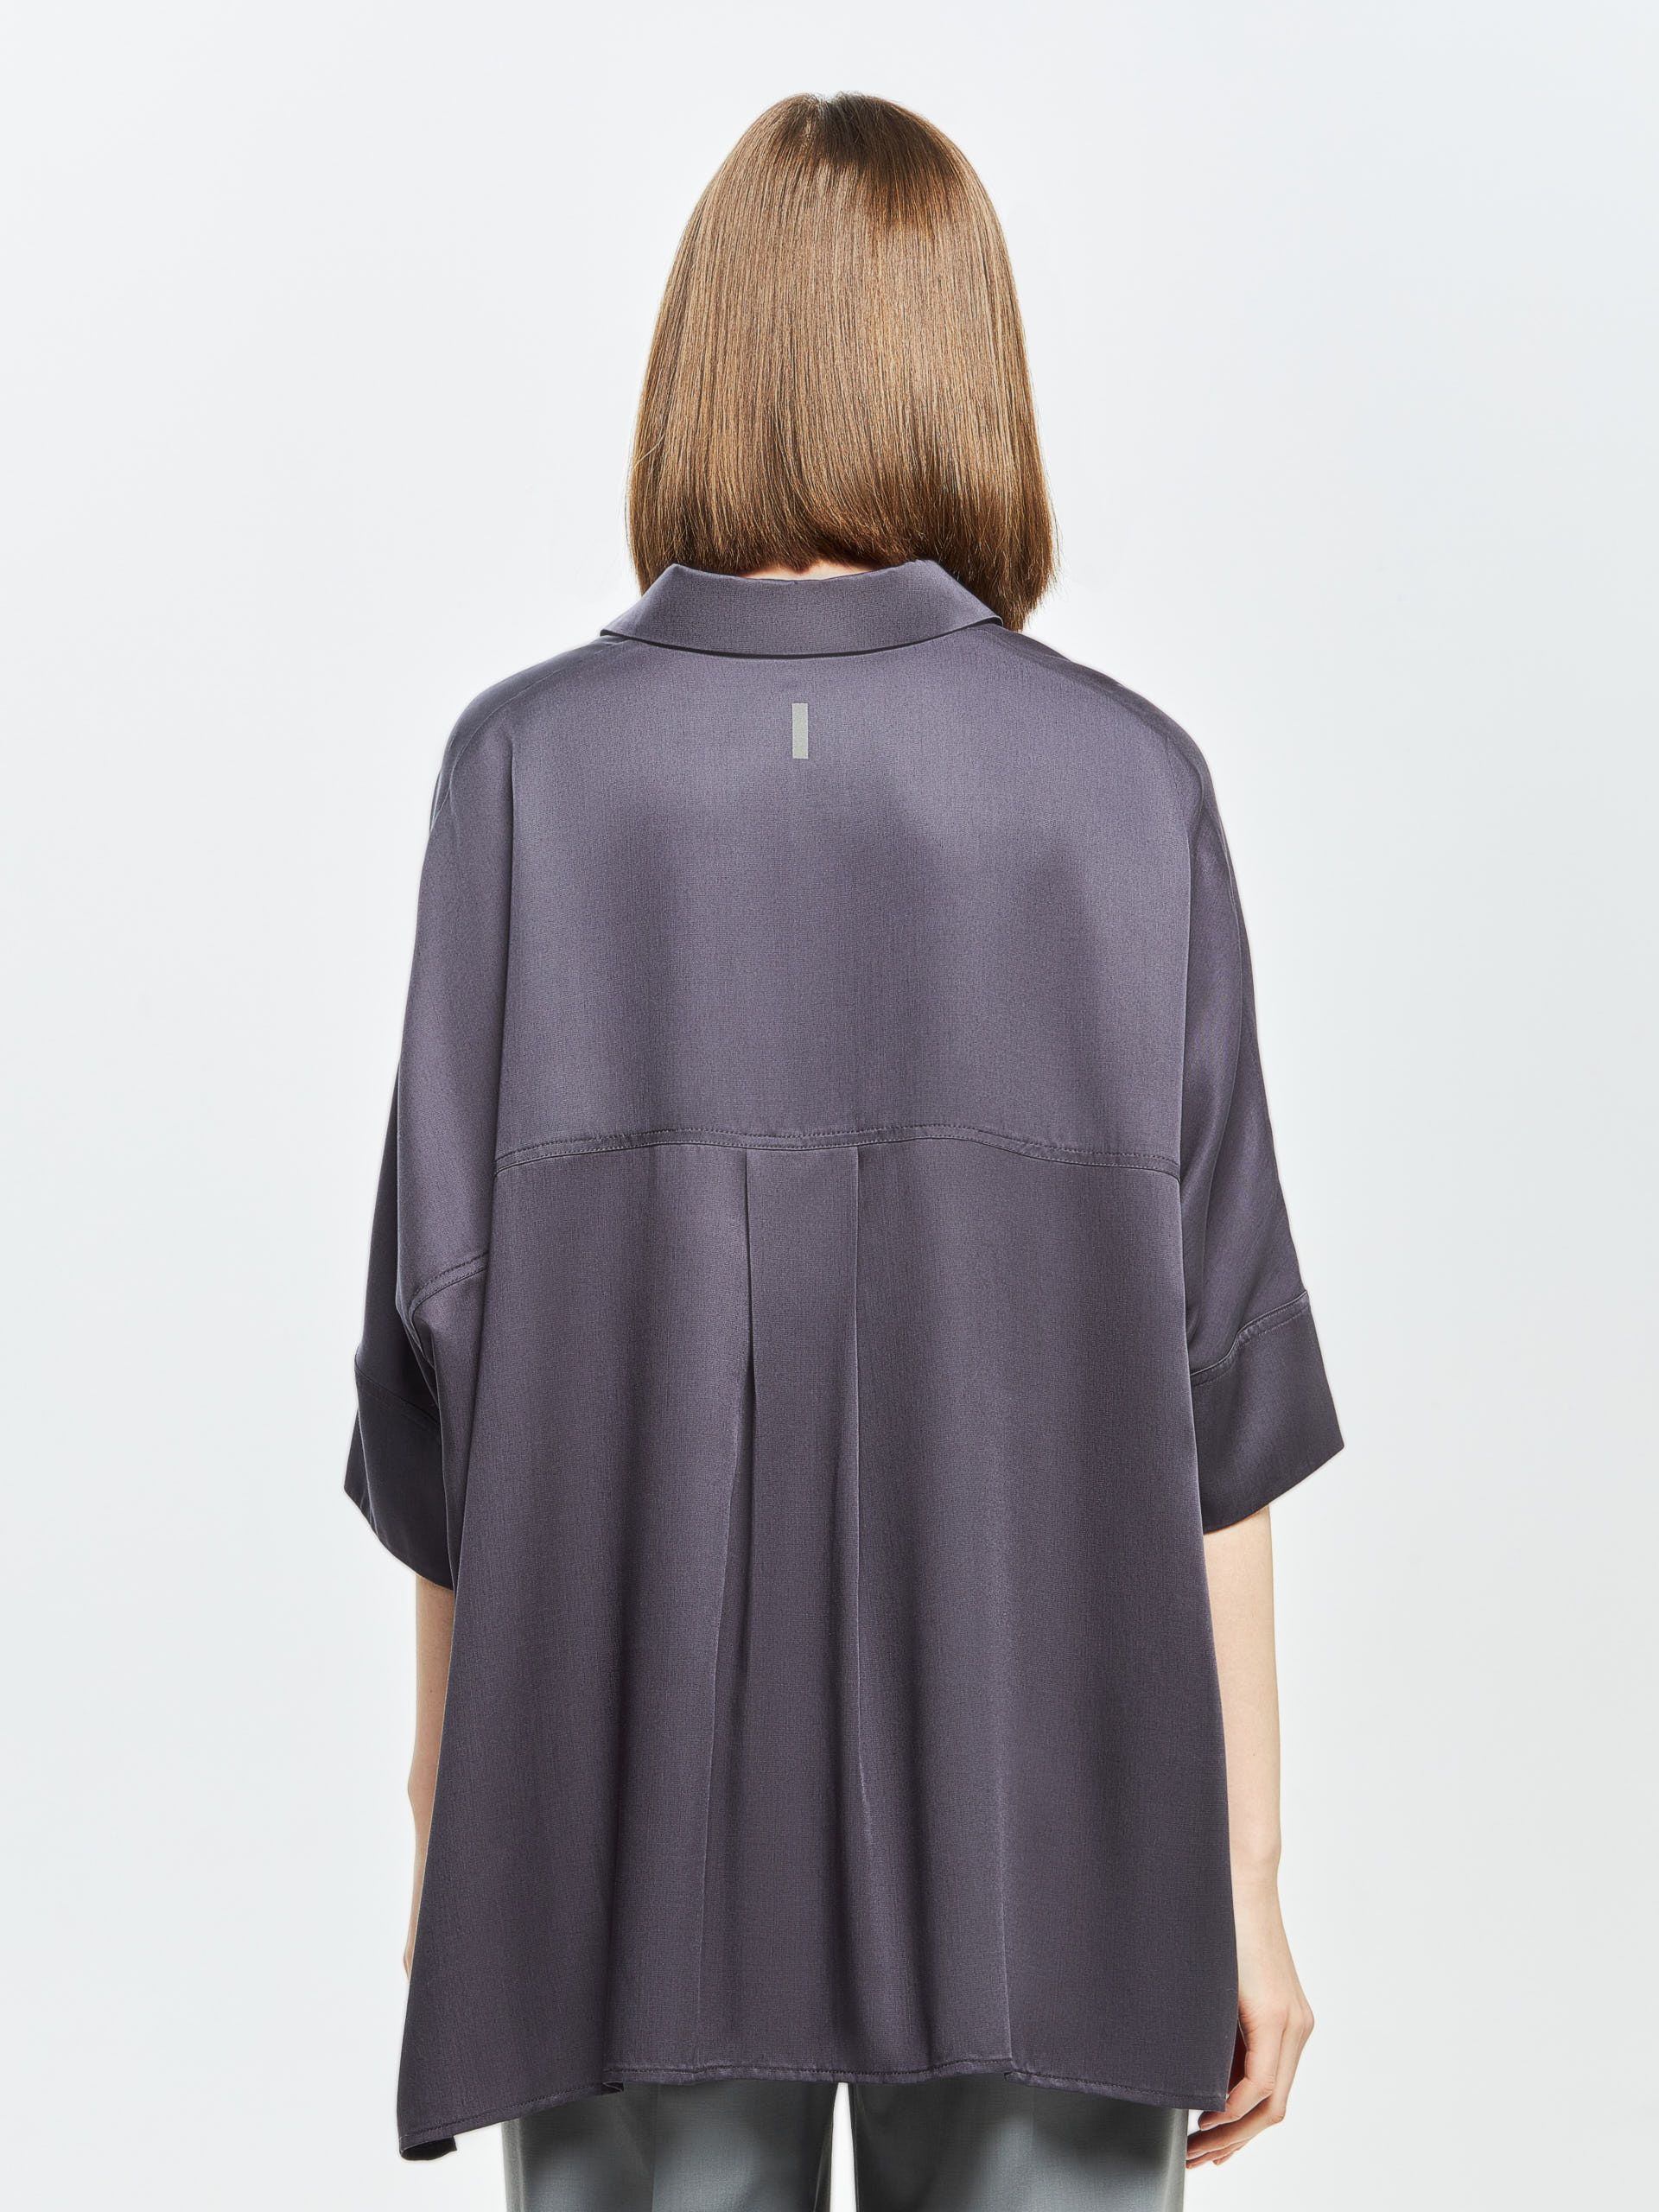 Лёгкая женственная блузка BREVIS из 100% эко-материала «тенсель». Изображение 3